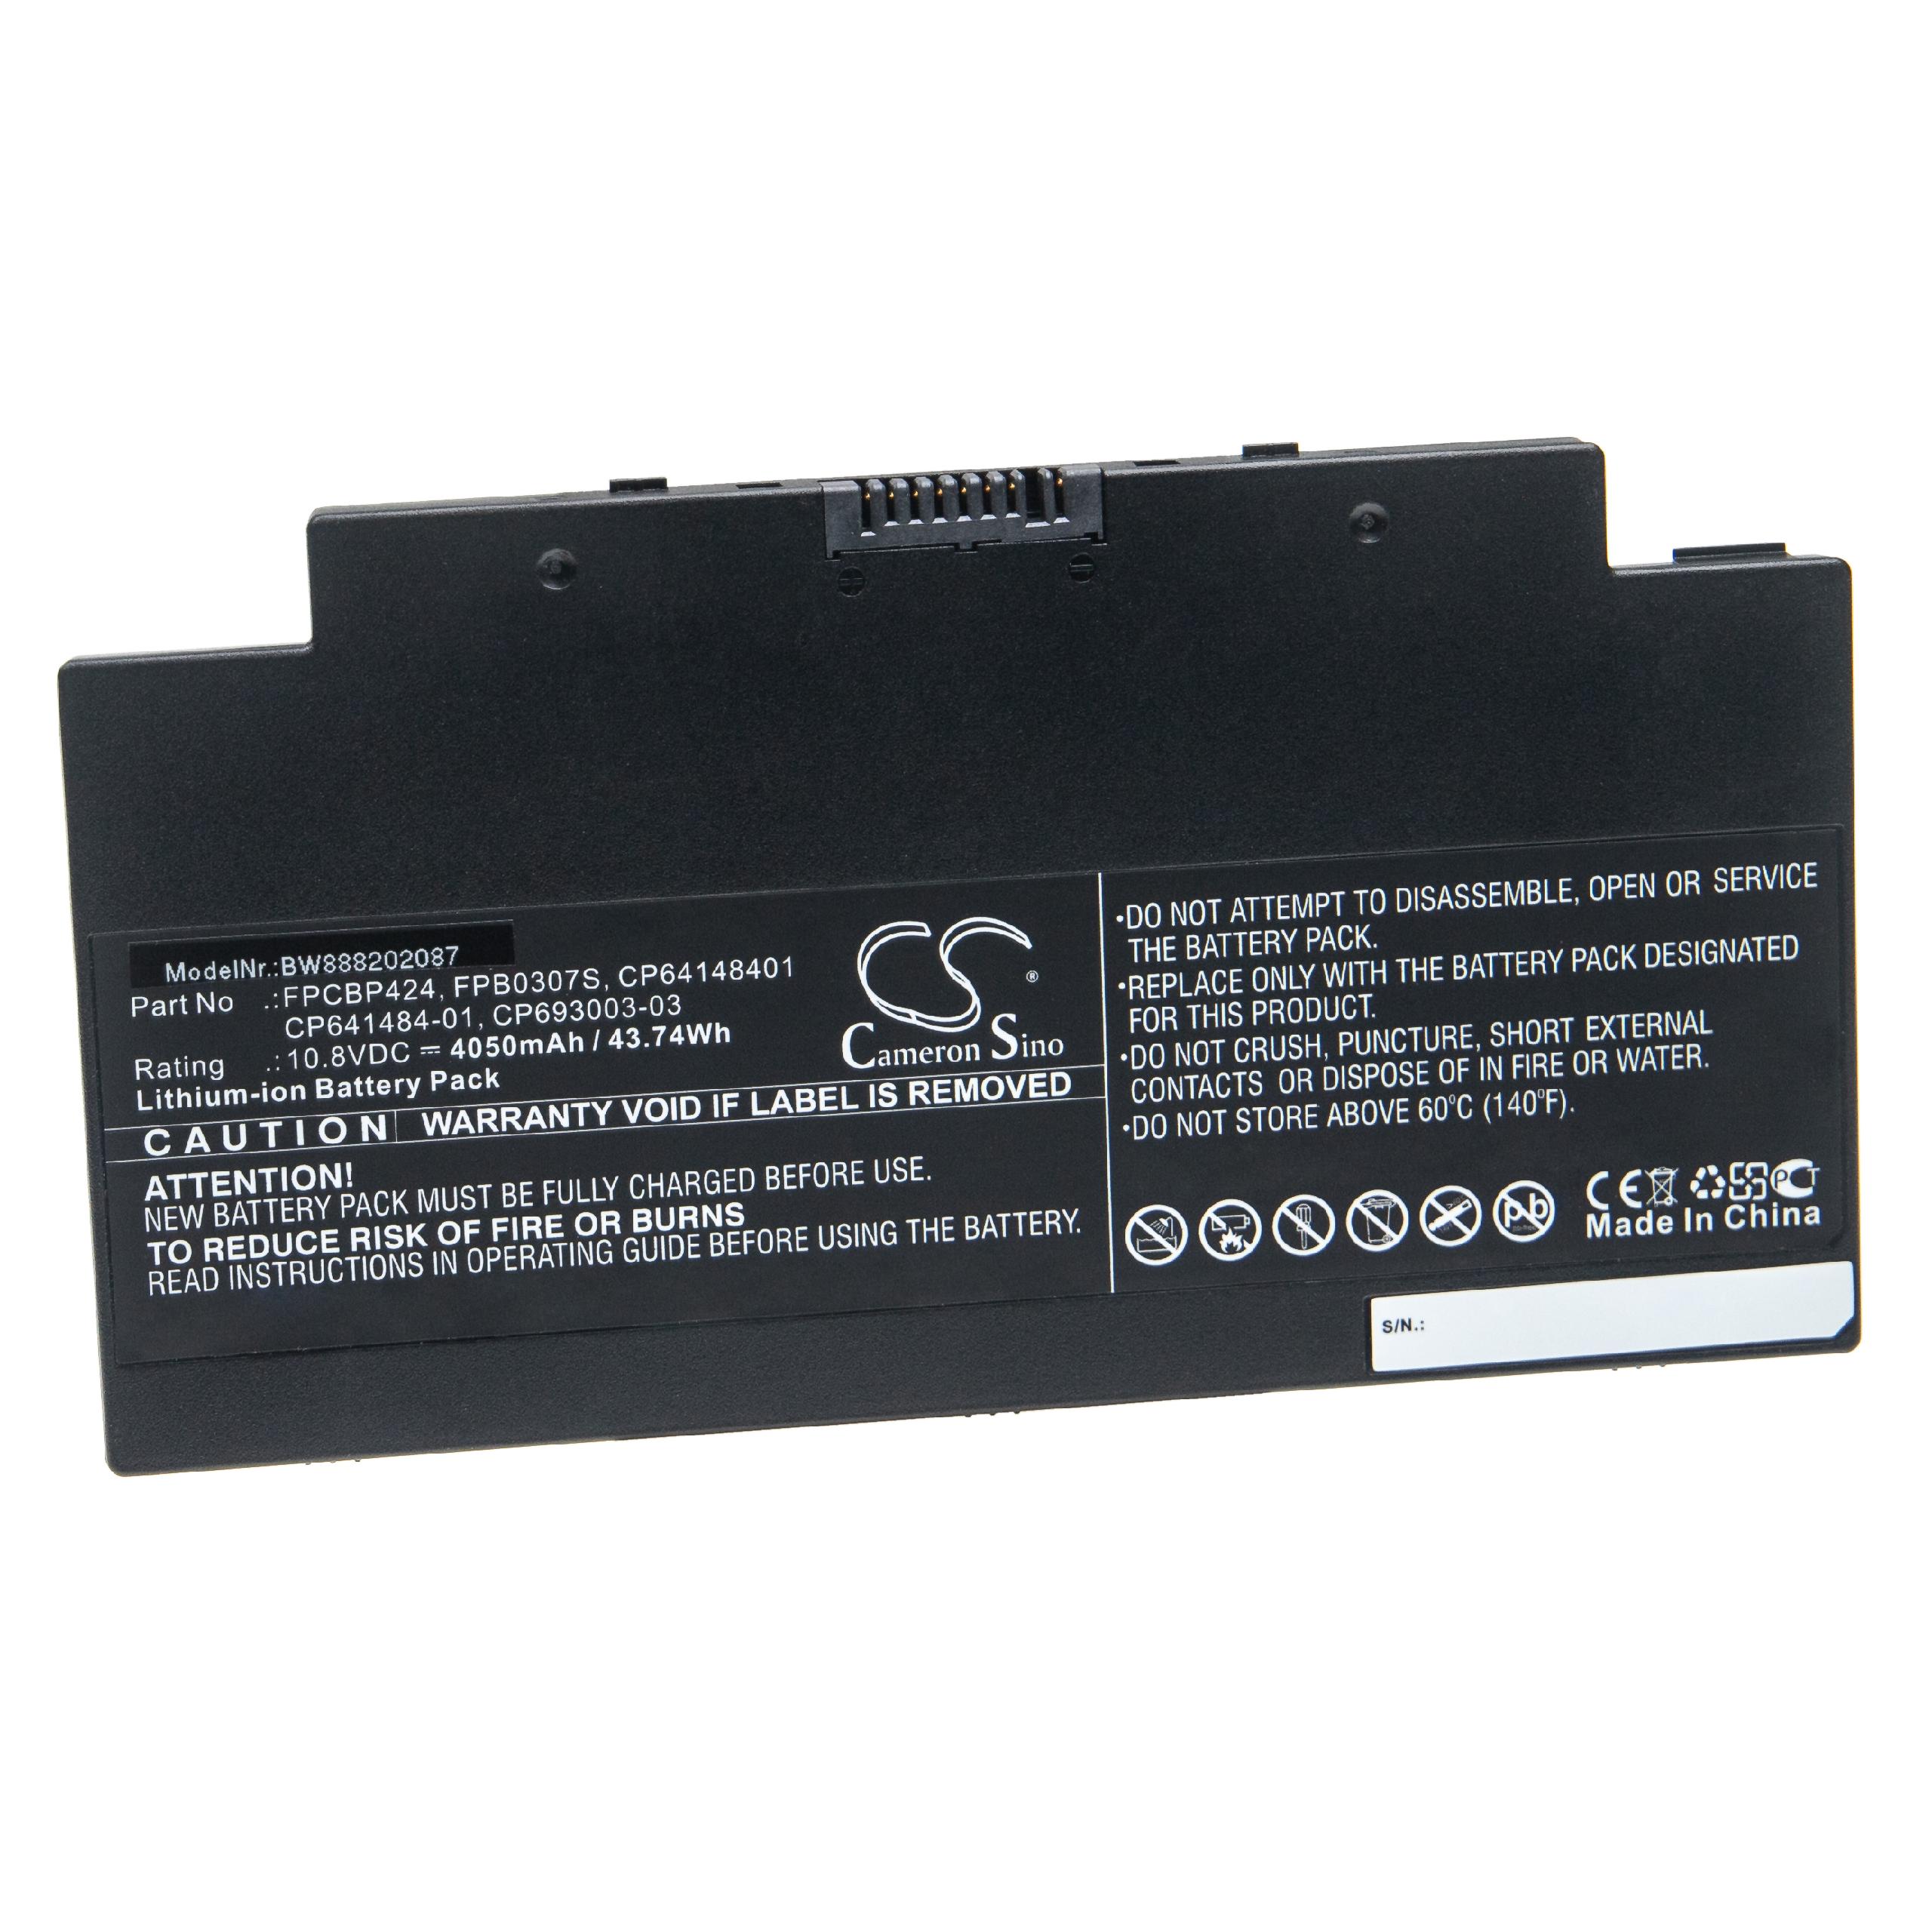 Batterie remplace Fujitsu CP641484-01, CP64148401 pour ordinateur portable - 4050mAh 10,8V Li-ion, noir